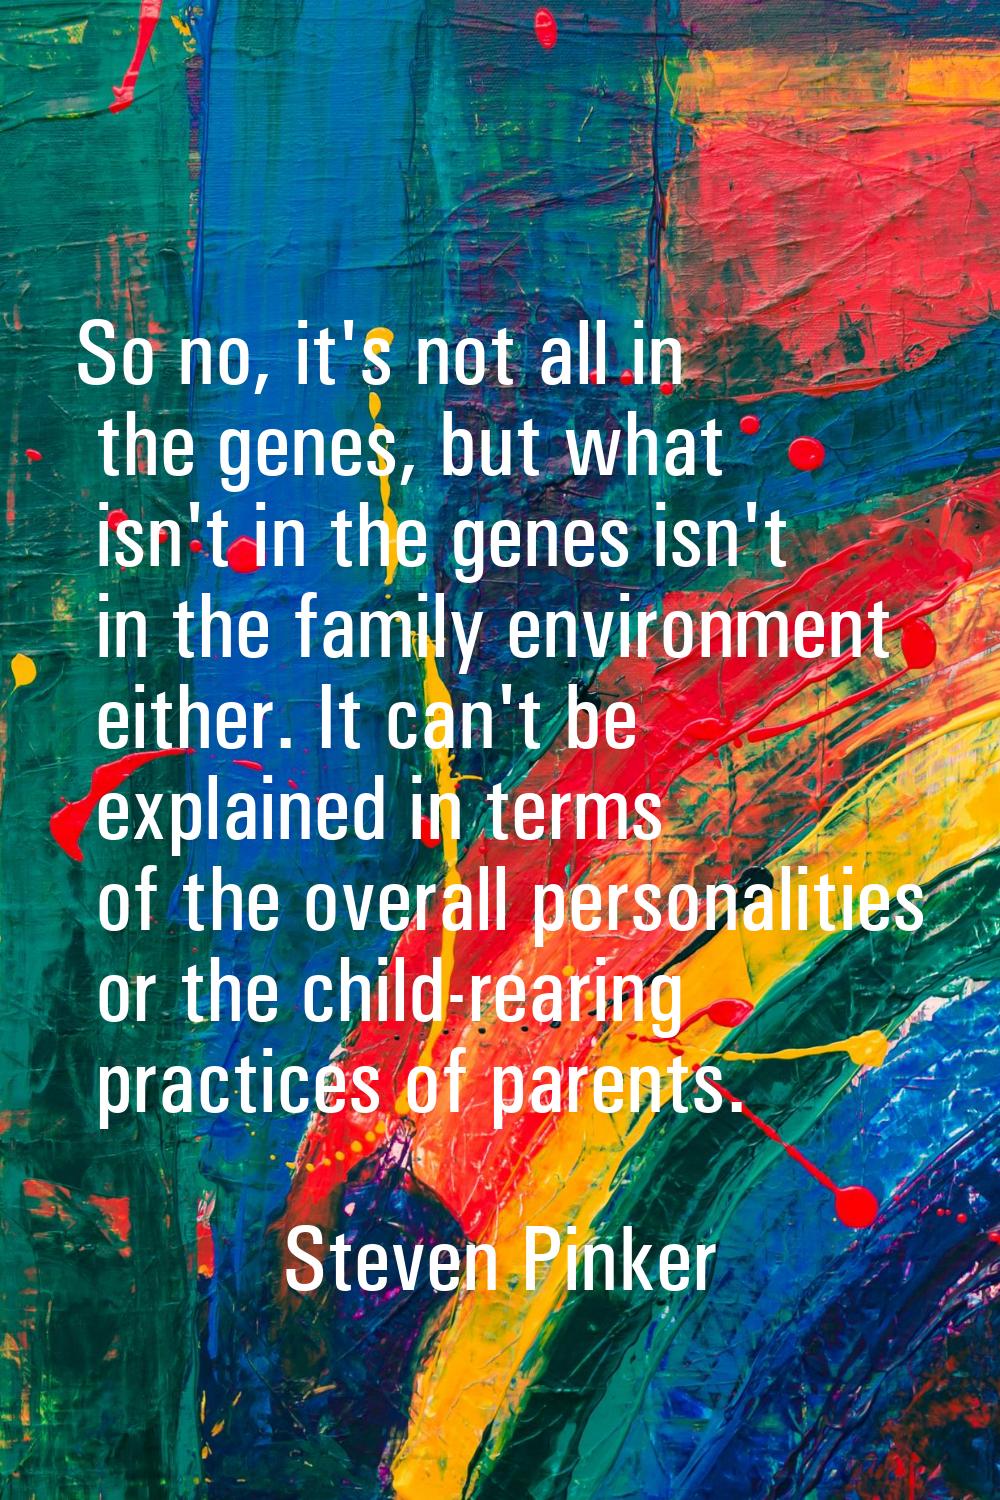 So no, it's not all in the genes, but what isn't in the genes isn't in the family environment eithe